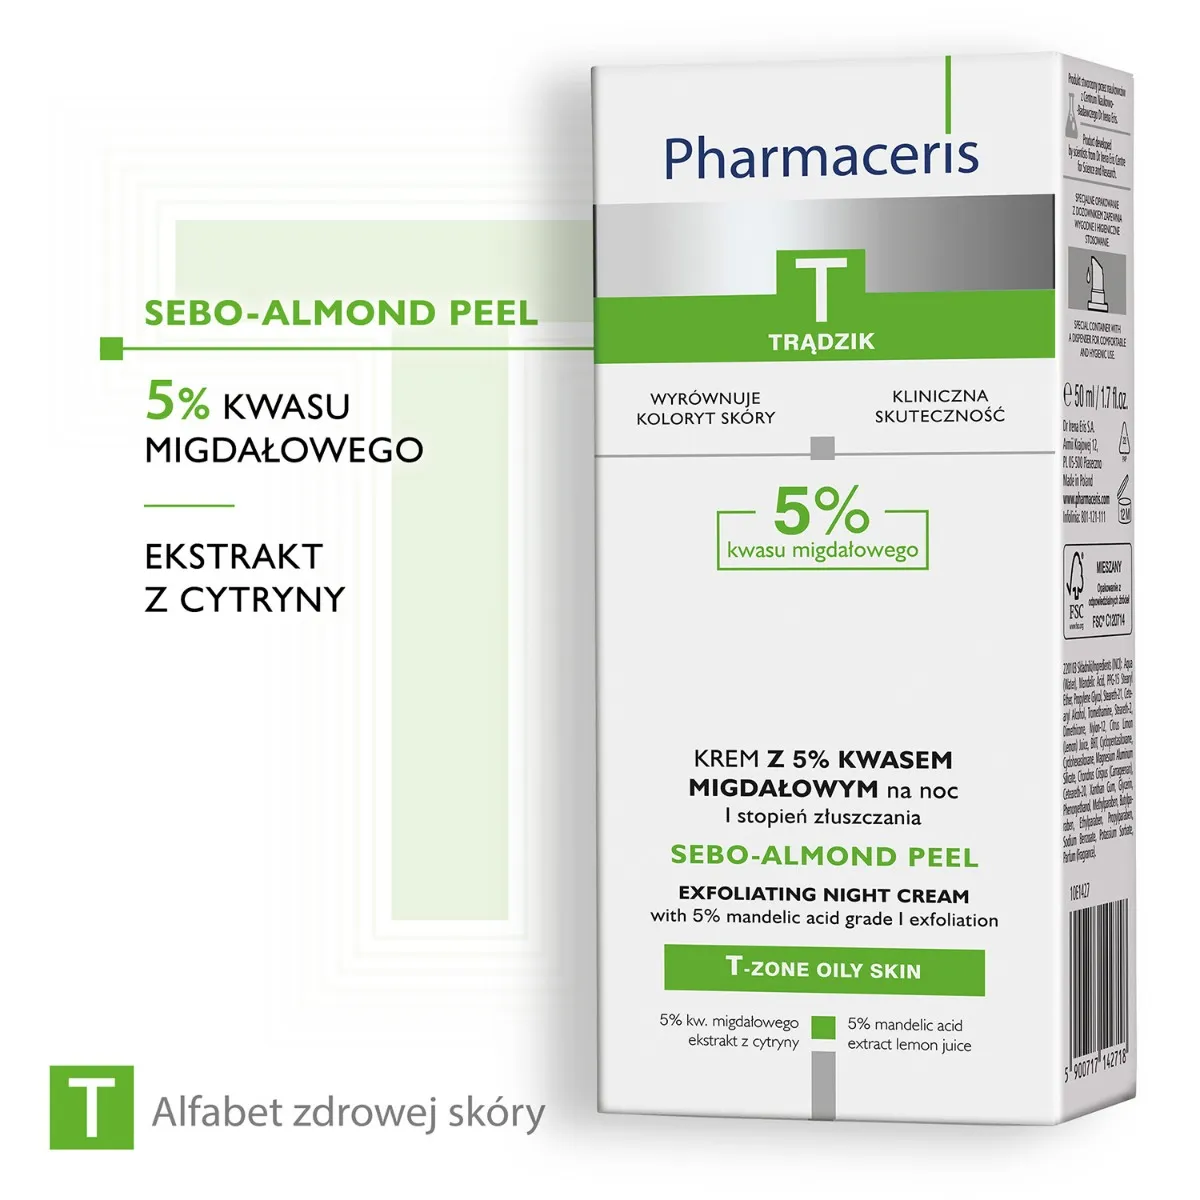 Pharmaceris T, Sebo-Almond Peel, krem z 5% zawartością  kwasu migdałowego na noc, 50 ml 